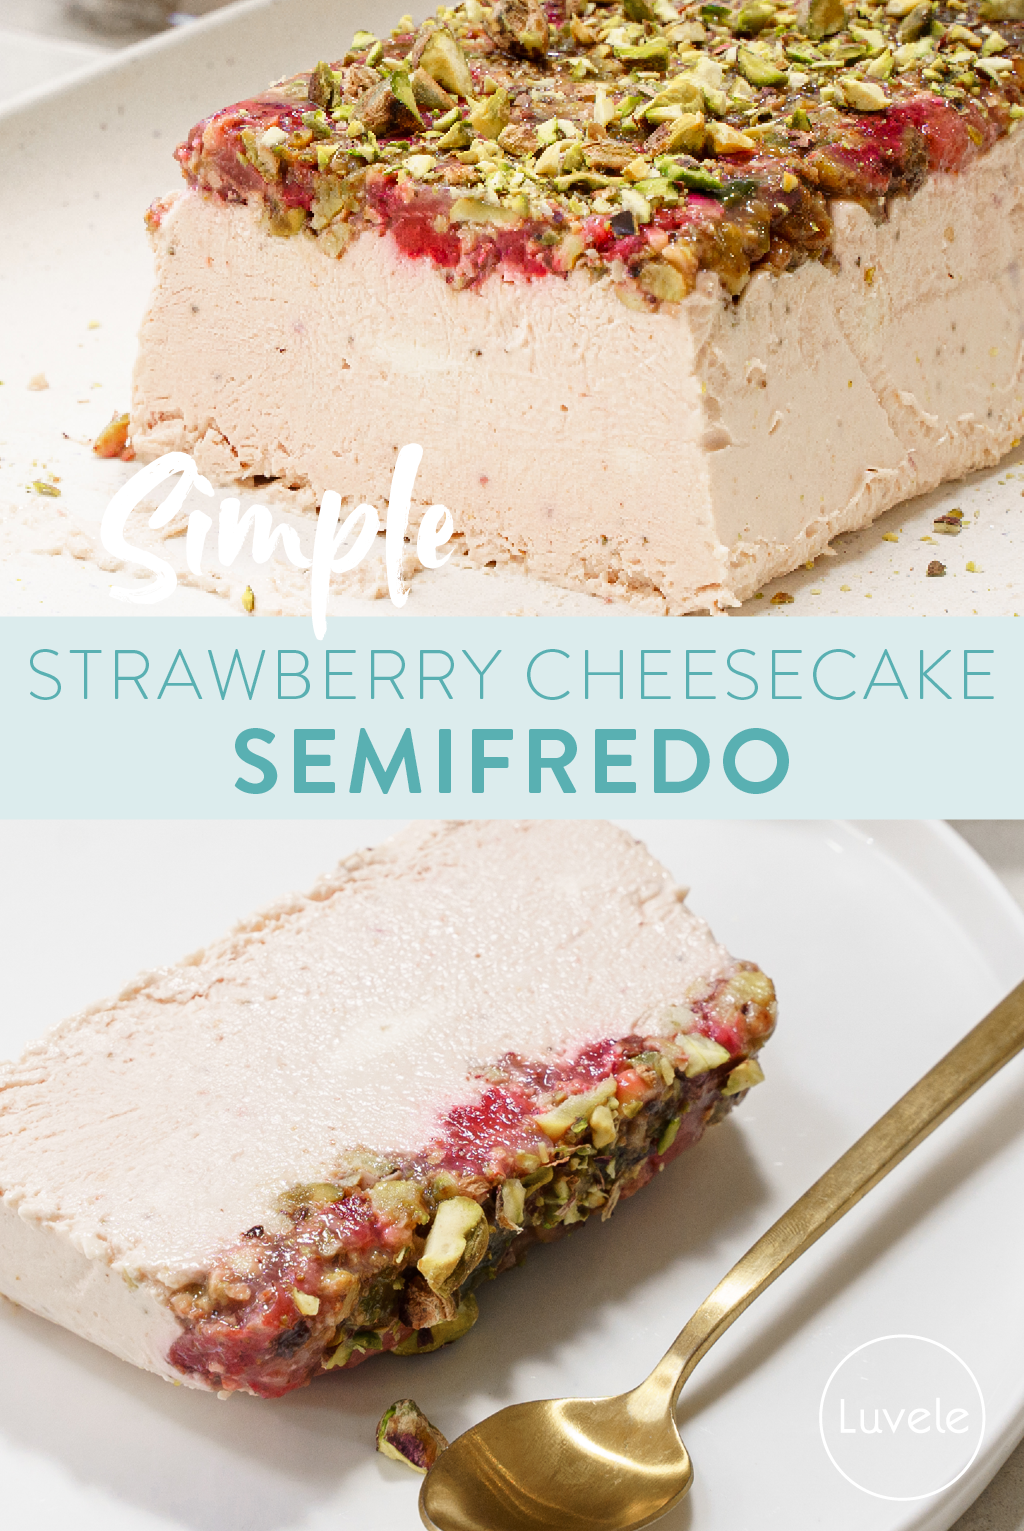 Strawberry cheesecake semifredo